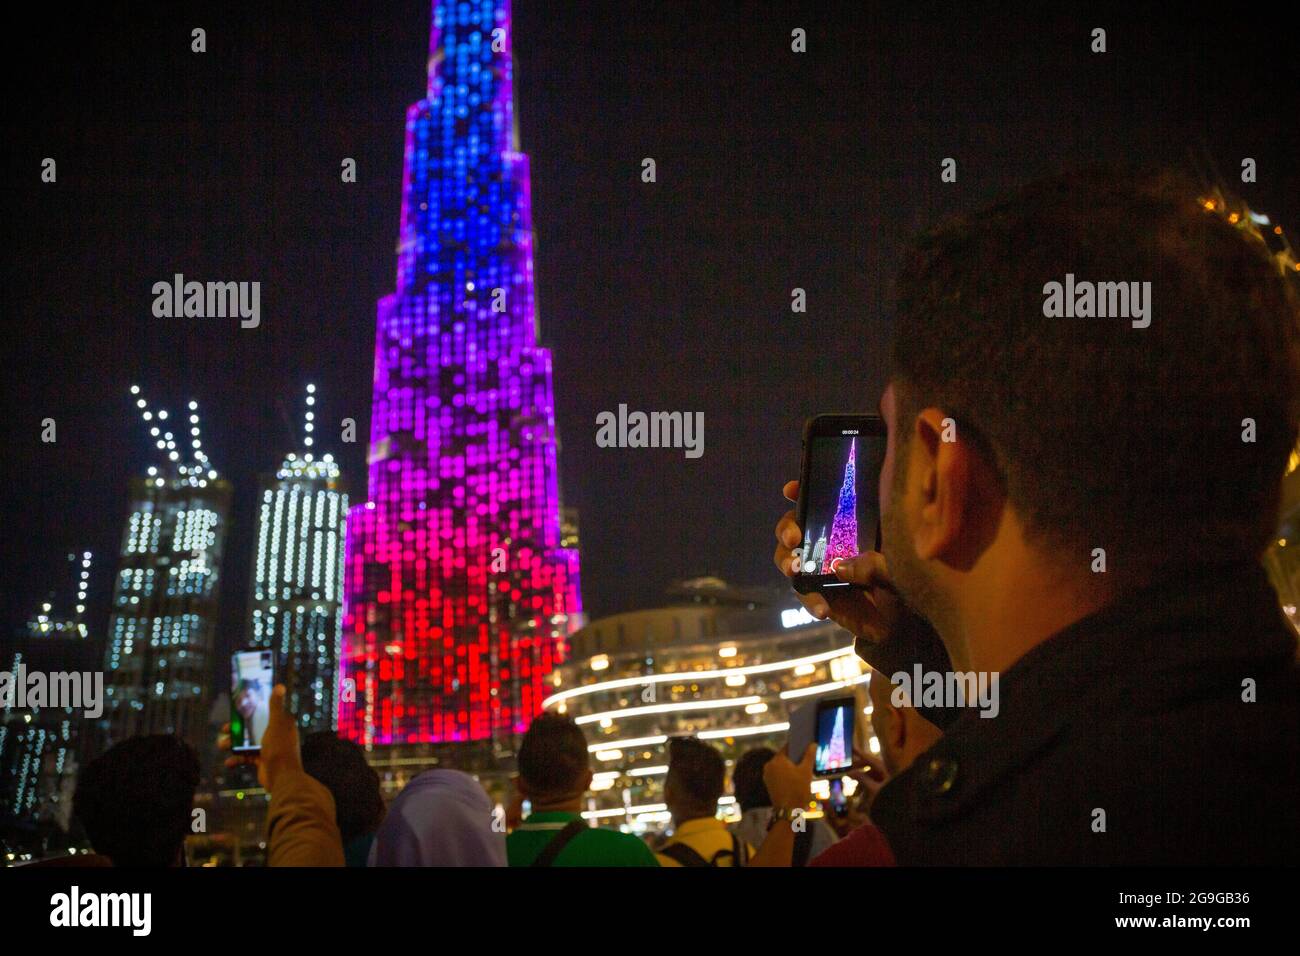 Un homme enregistre le spectacle de lumière sur Burj Khalife, Dubaï, Émirats arabes Unis. --- Burj Khalifa, le plus haut bâtiment du monde, est le décor pour une lumière spectaculaire Banque D'Images